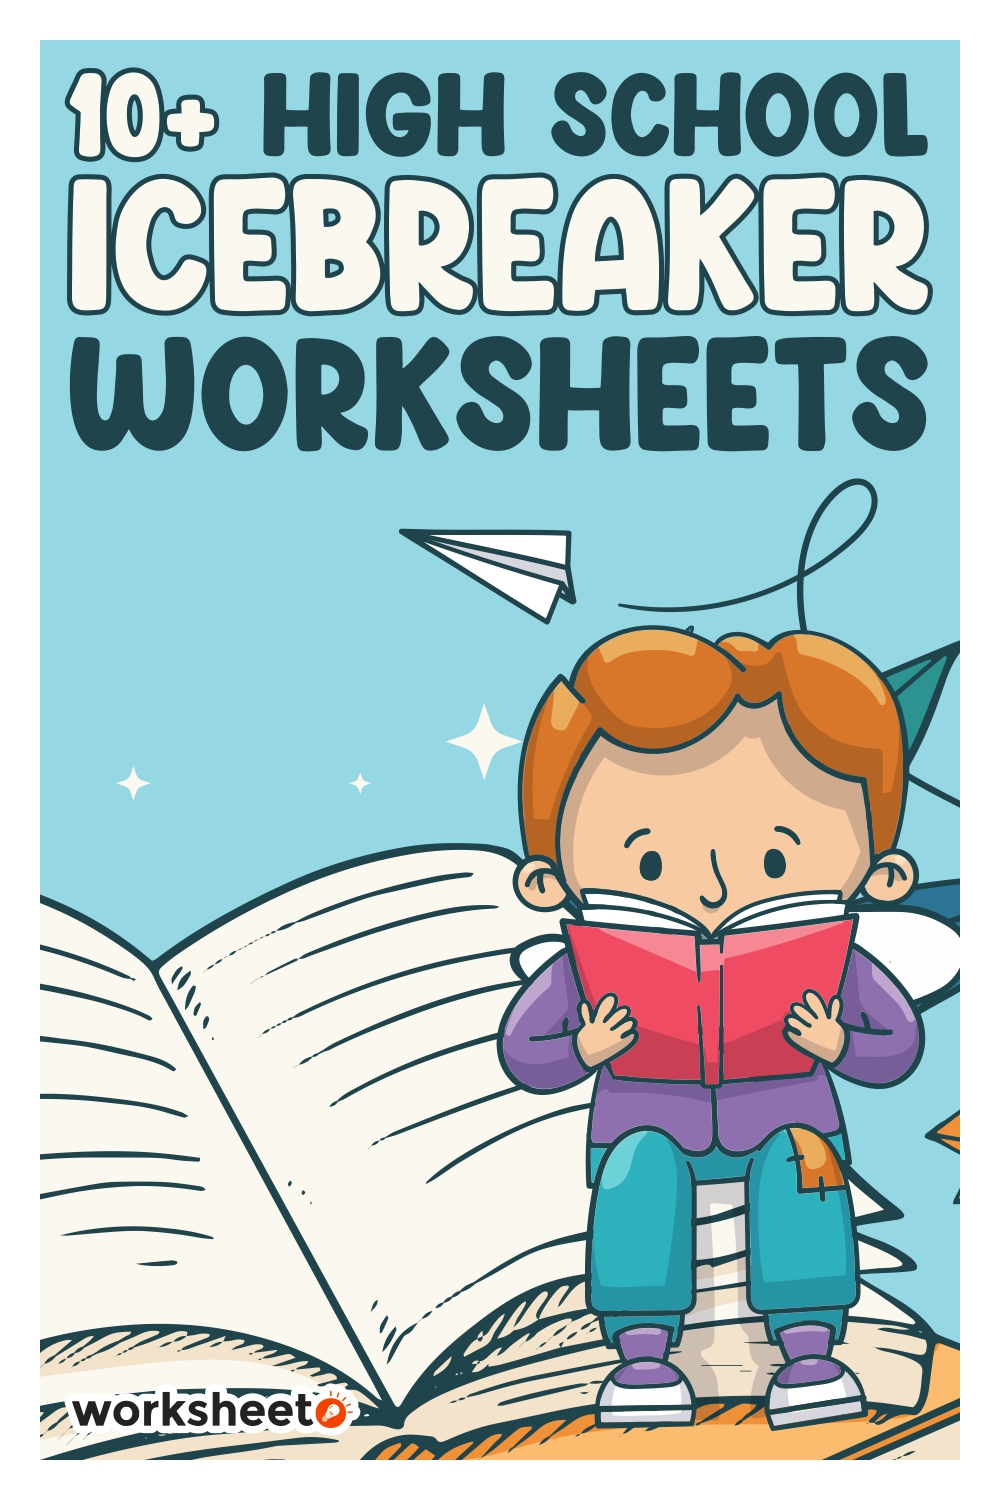 18 Images of High School Icebreaker Worksheet